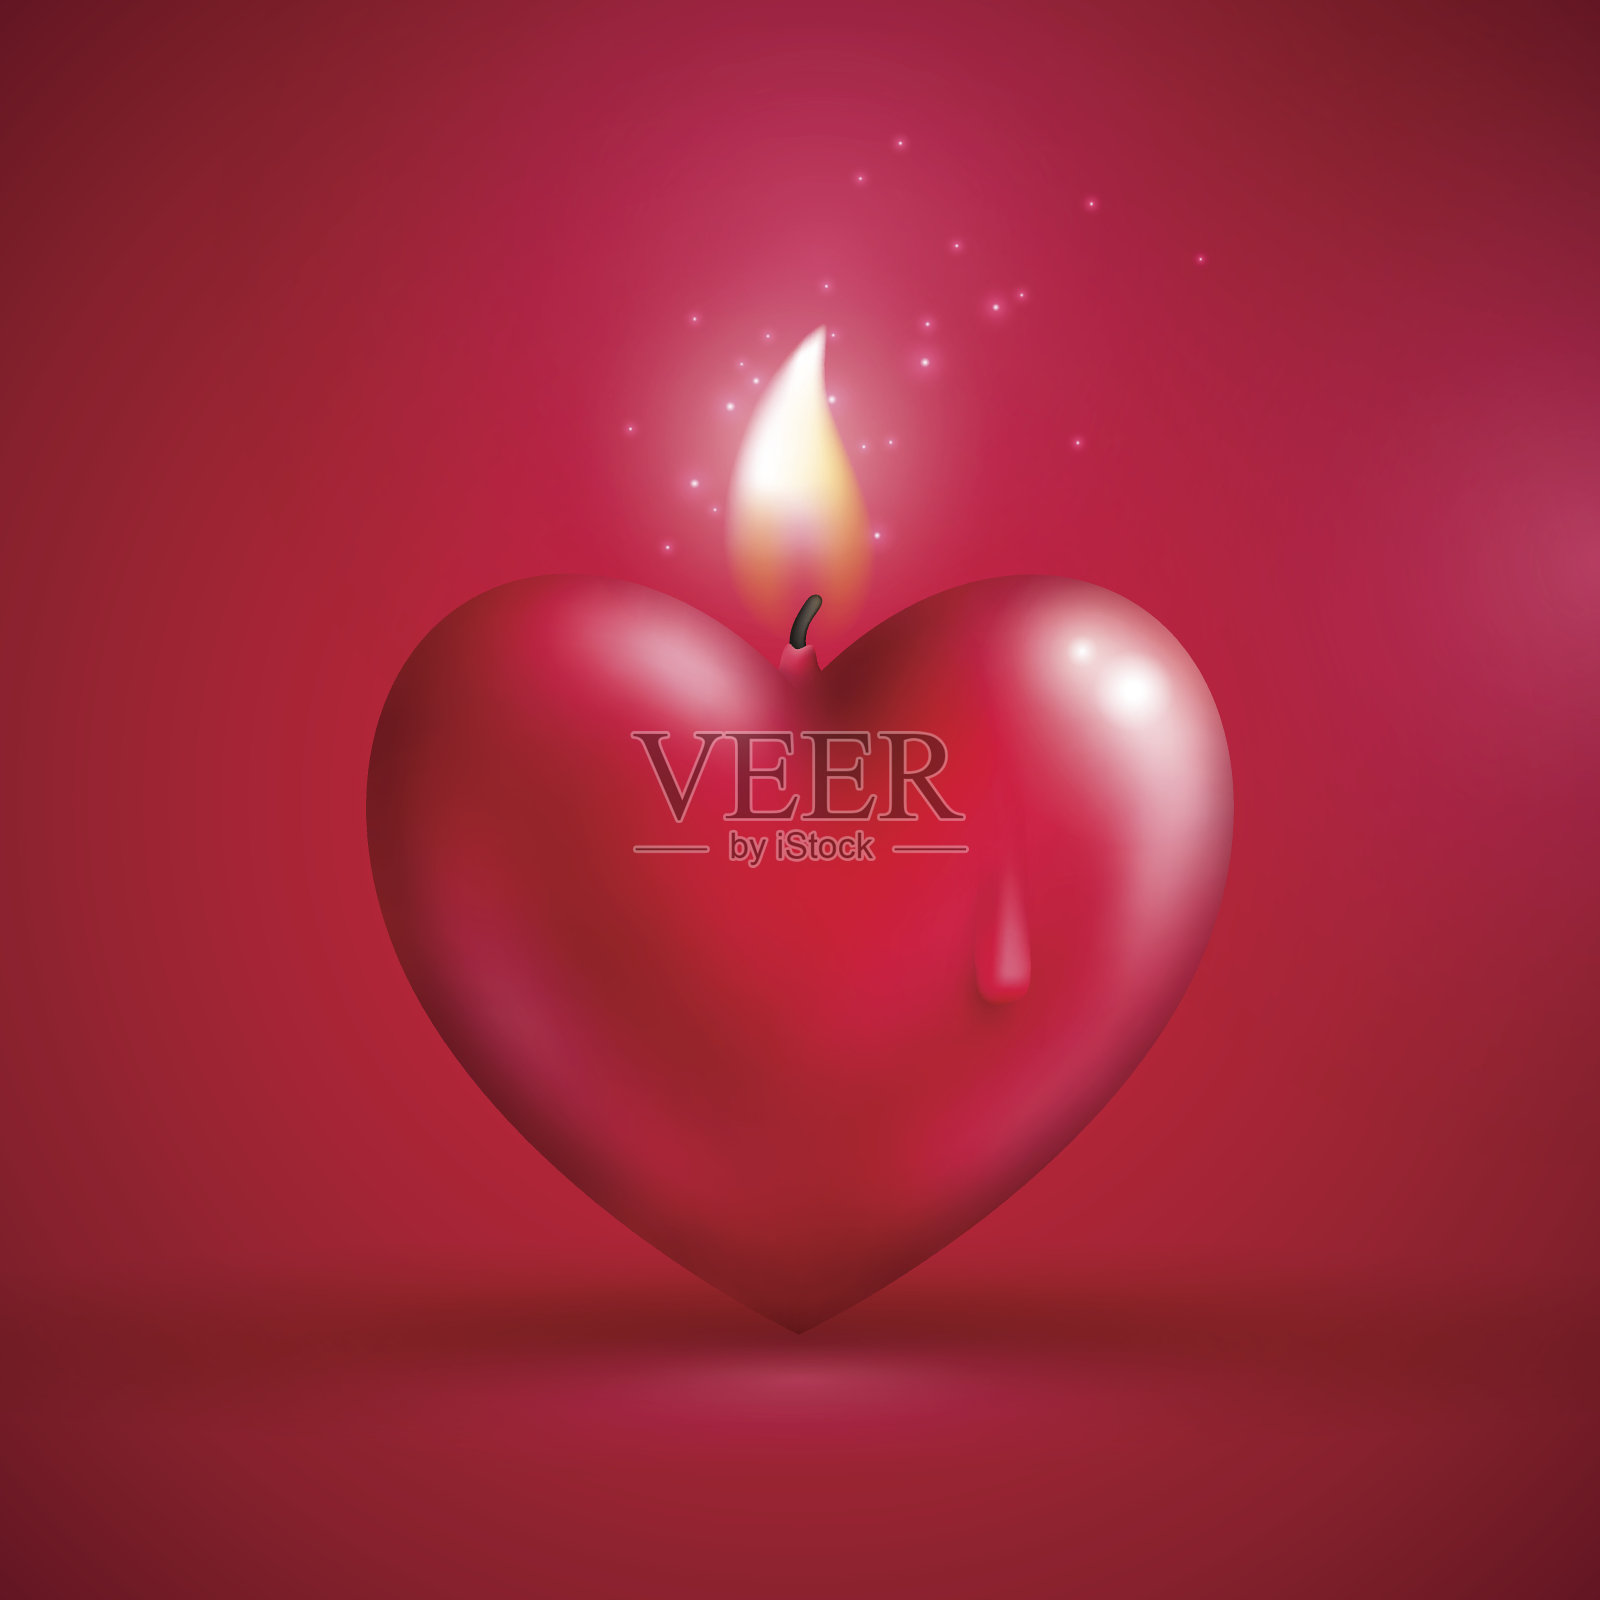 粉红色背景上的红色心形蜡烛插画图片素材